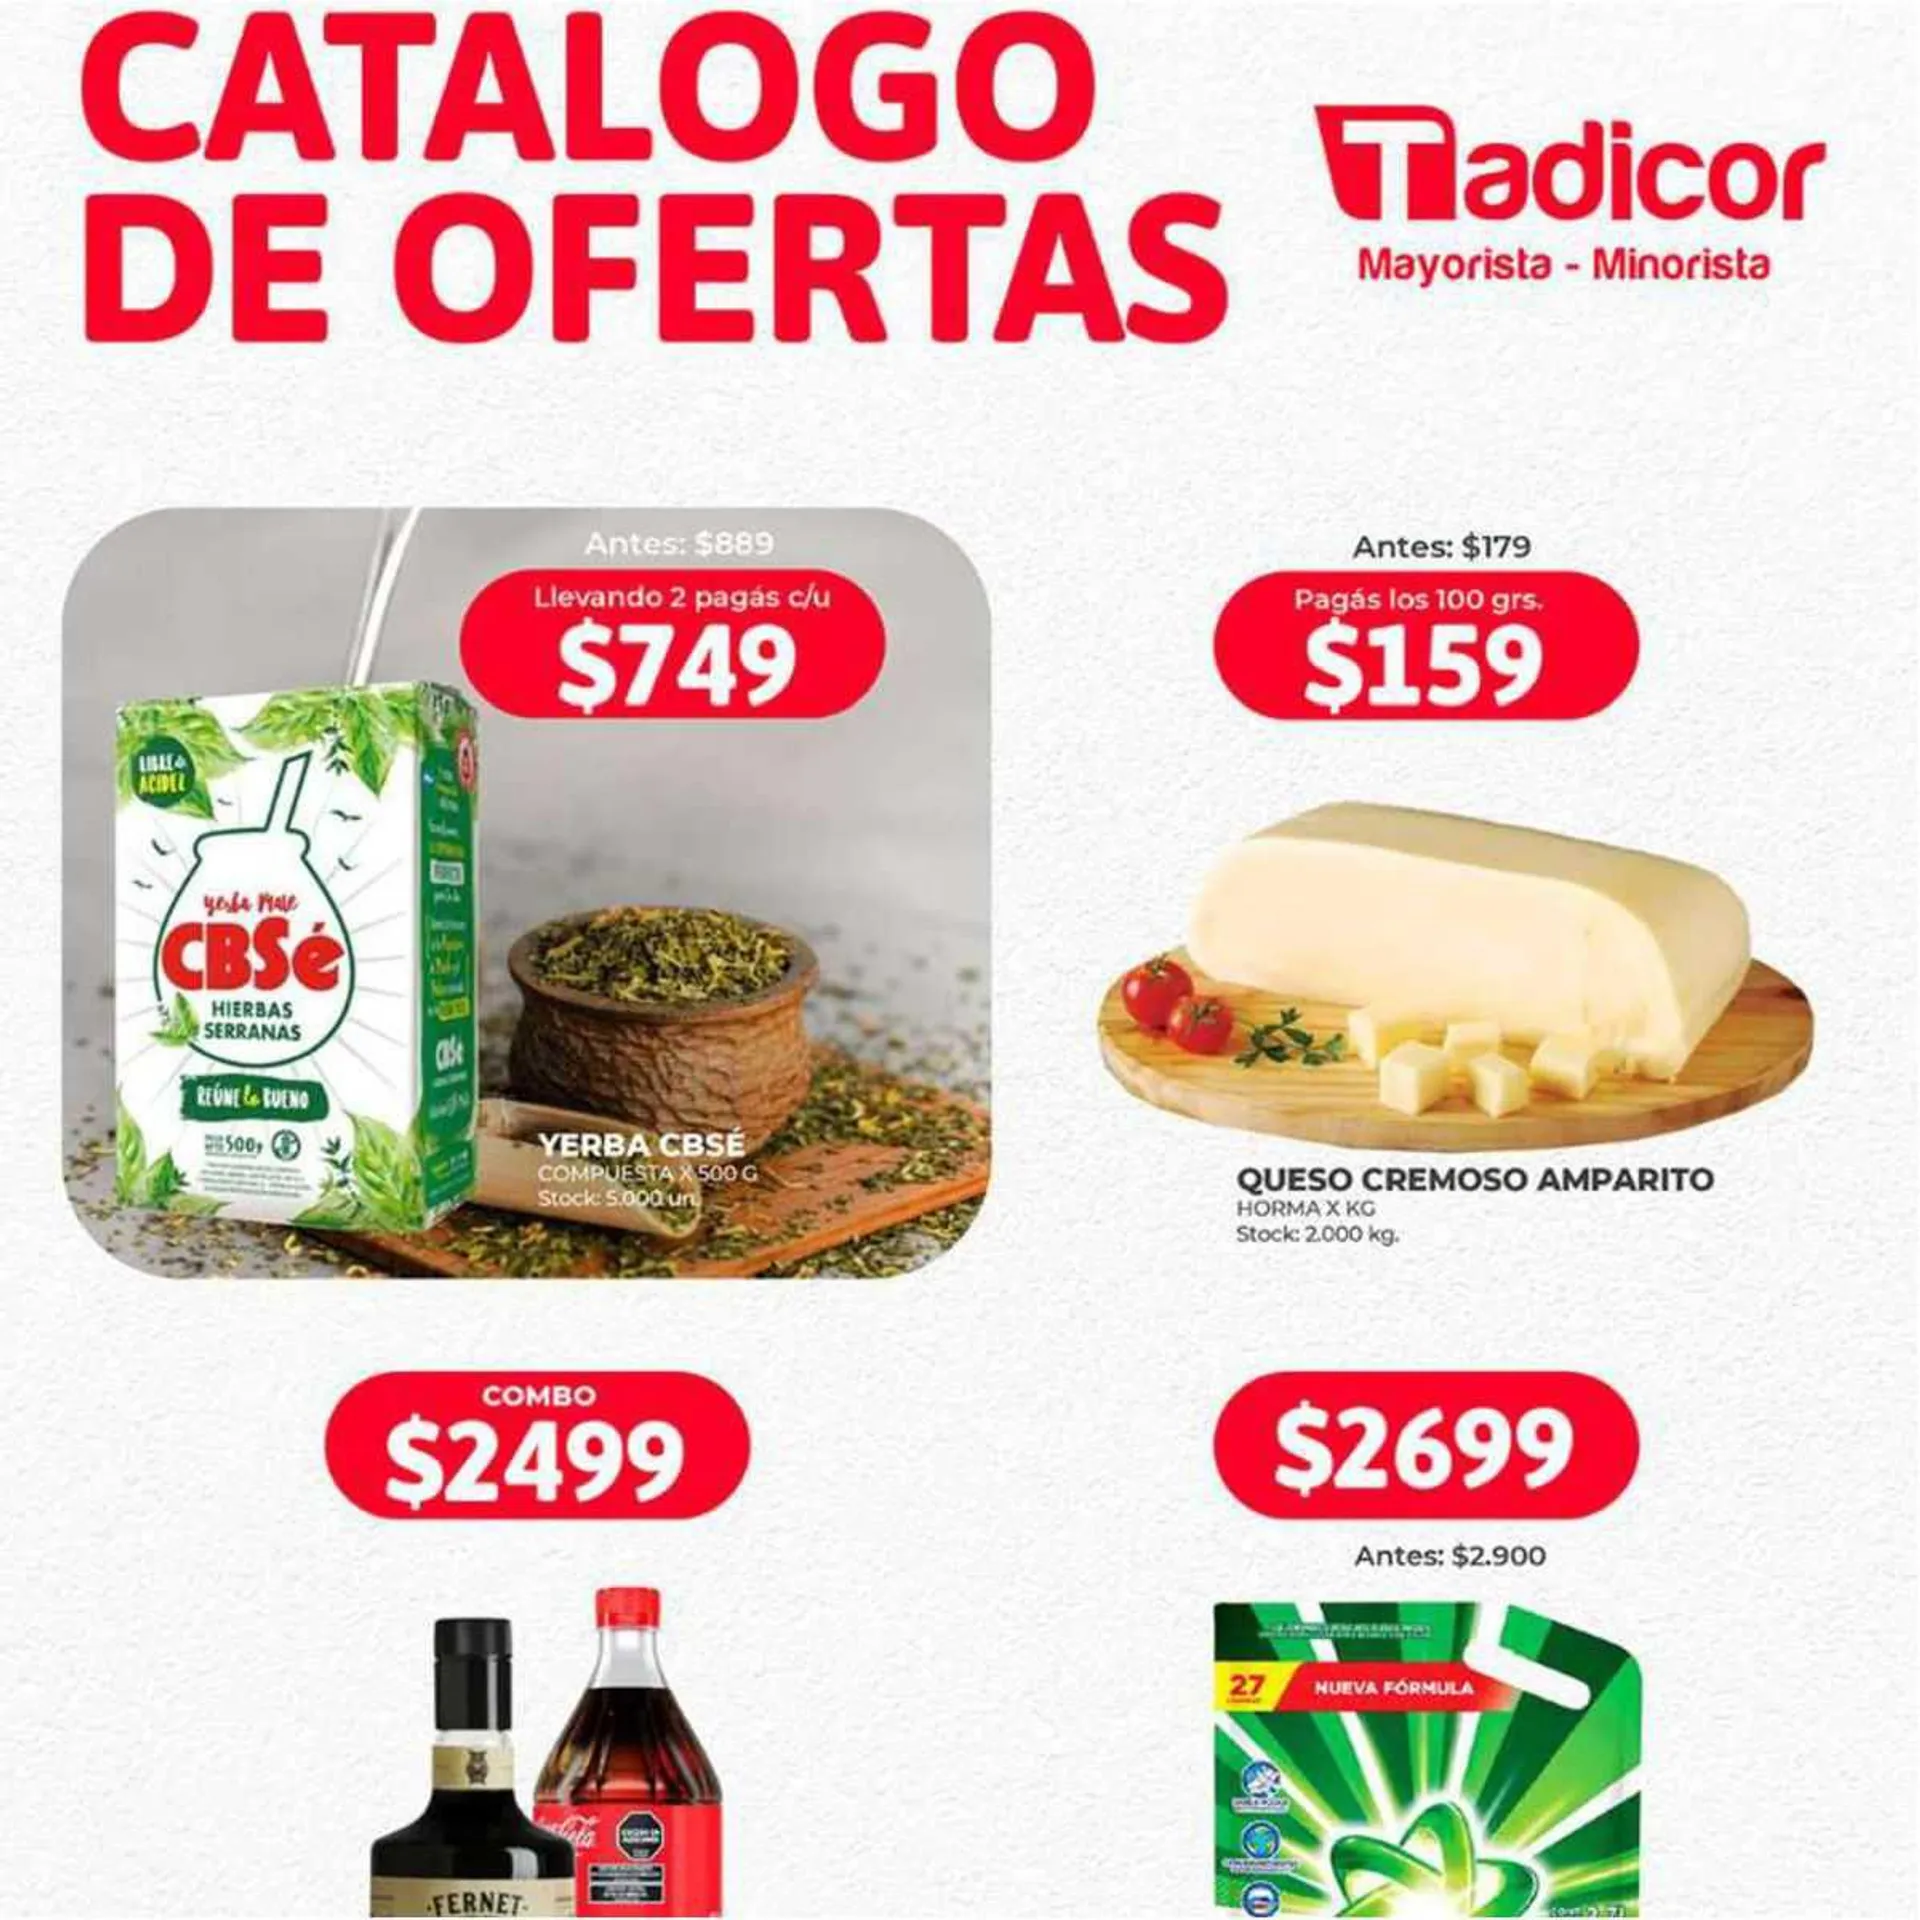 Catálogo Supermercados Tadicor